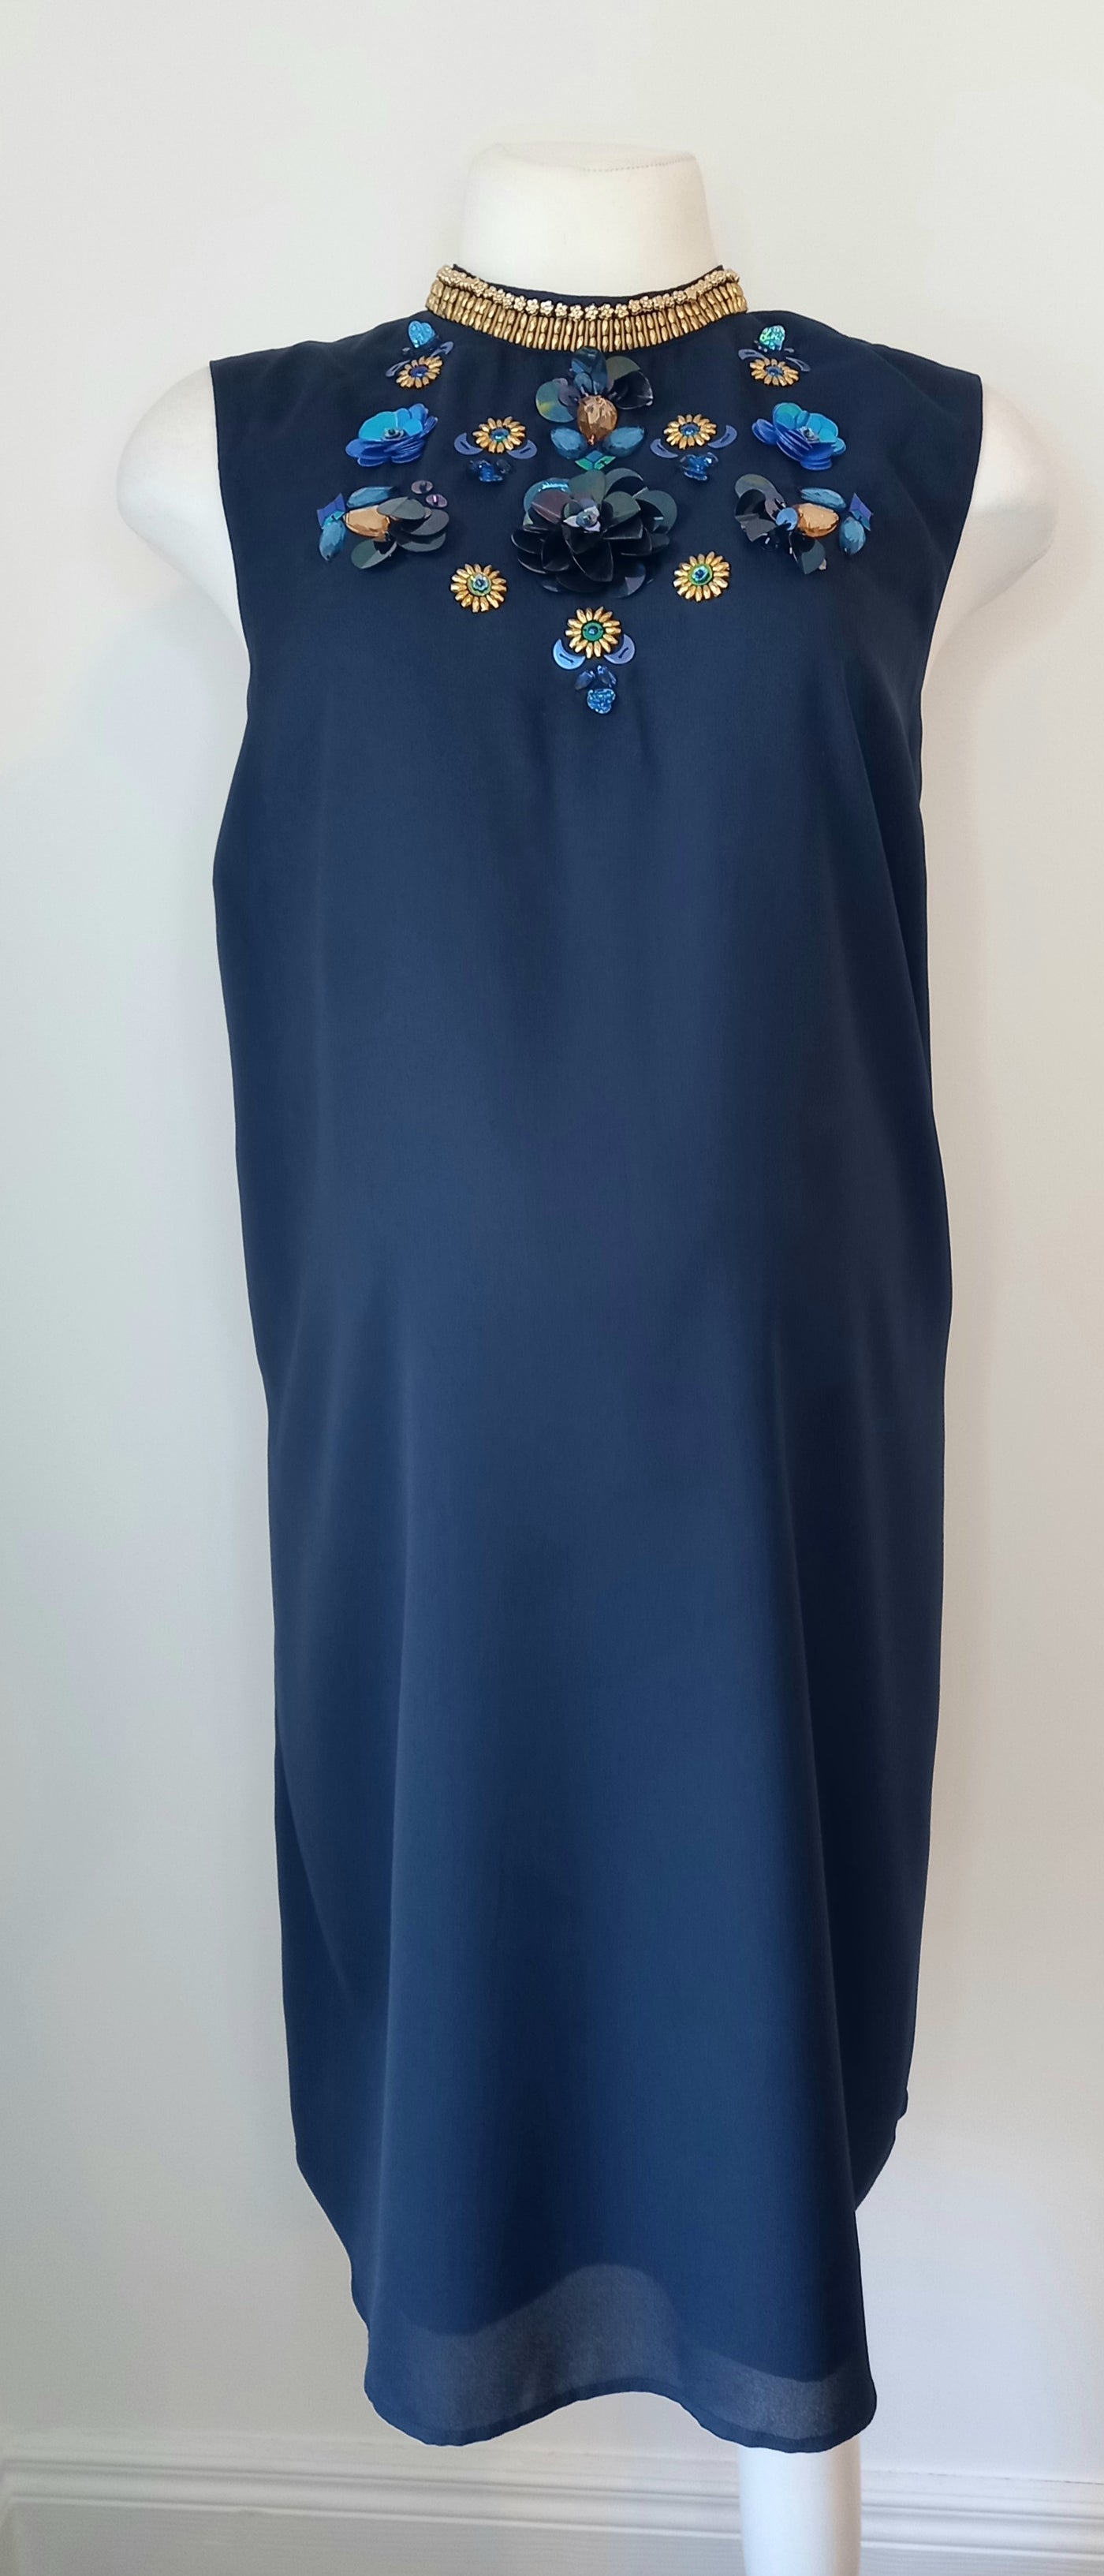 Asos Navy Sleeveless Embellished Tunic Dress - Size 12